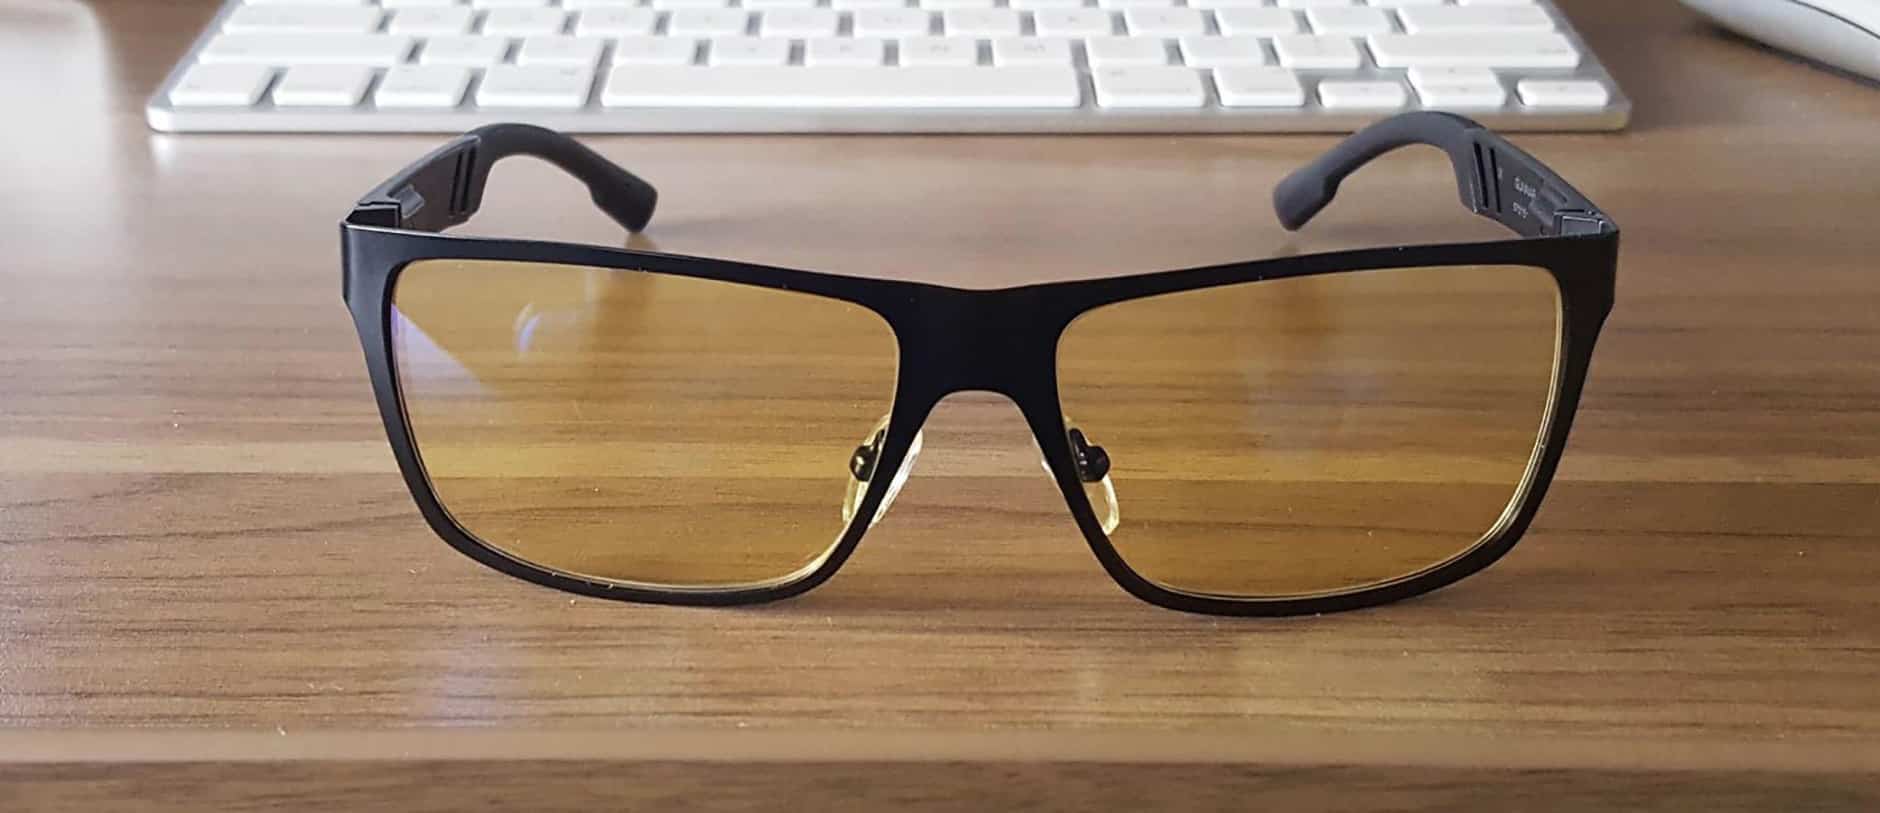 Sử dụng kính chống ánh sáng xanh để bảo vệ mắt